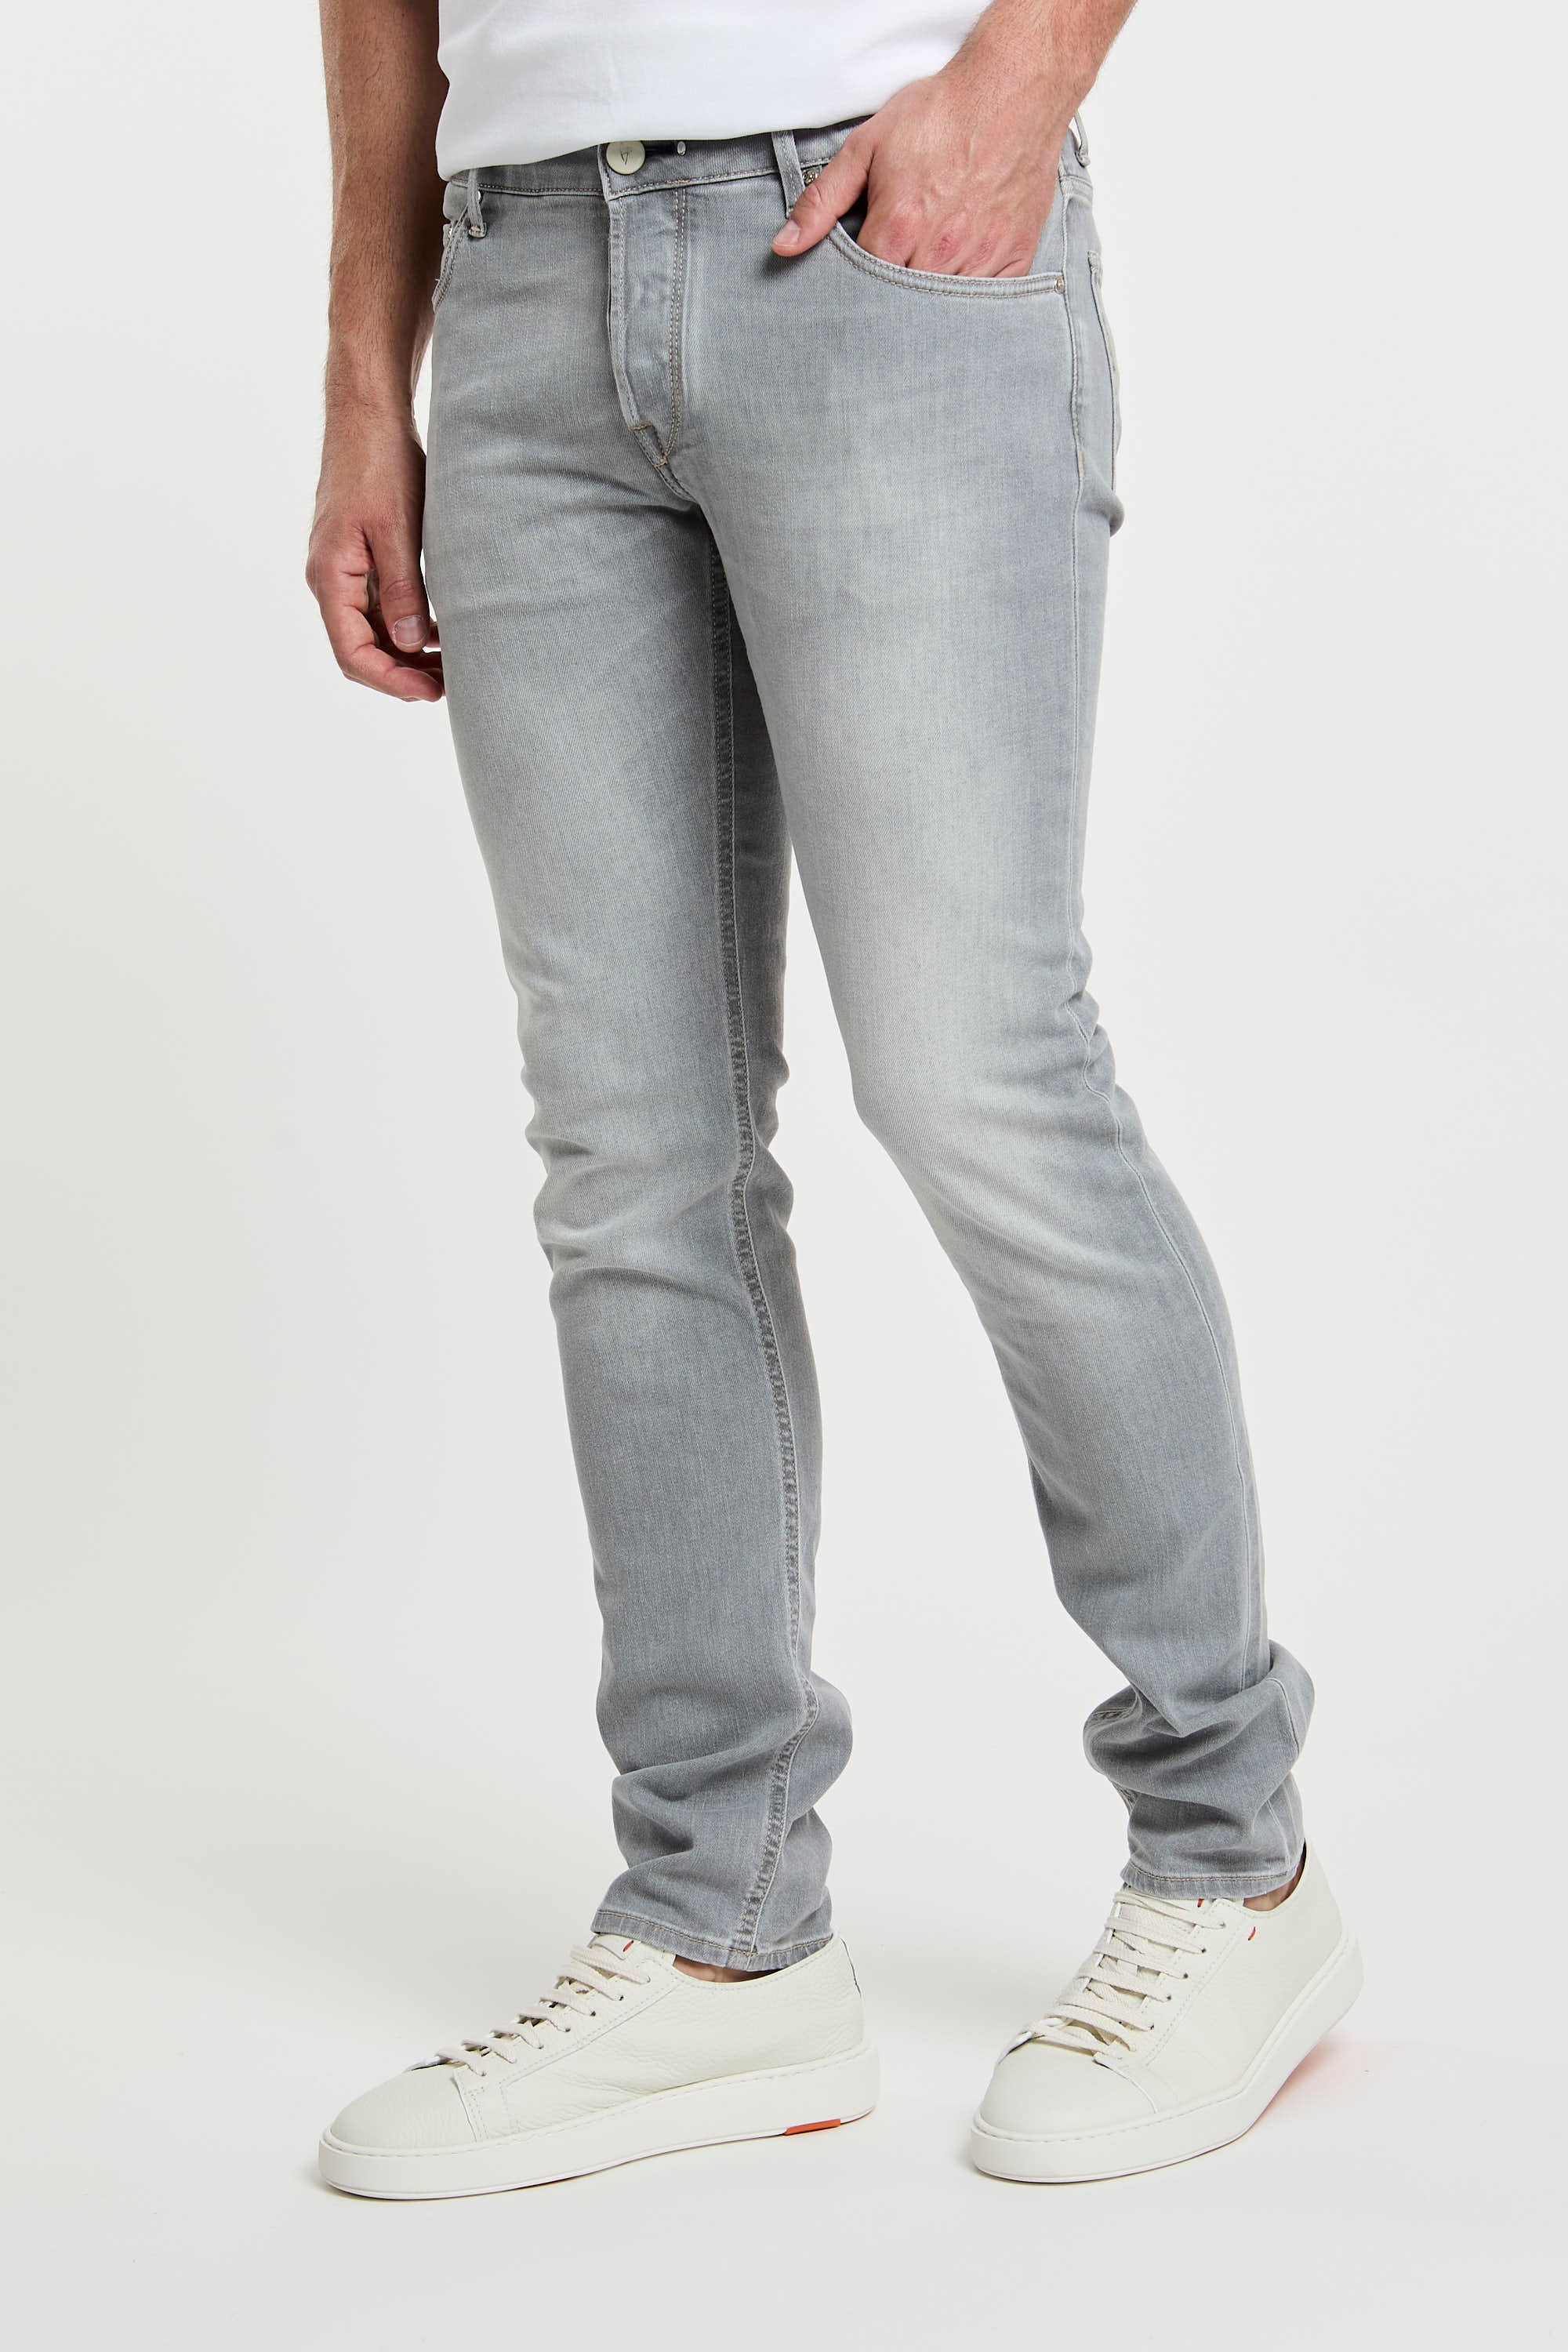 Ausgewählte Jeans Orvieto Baumwolle Grau-1